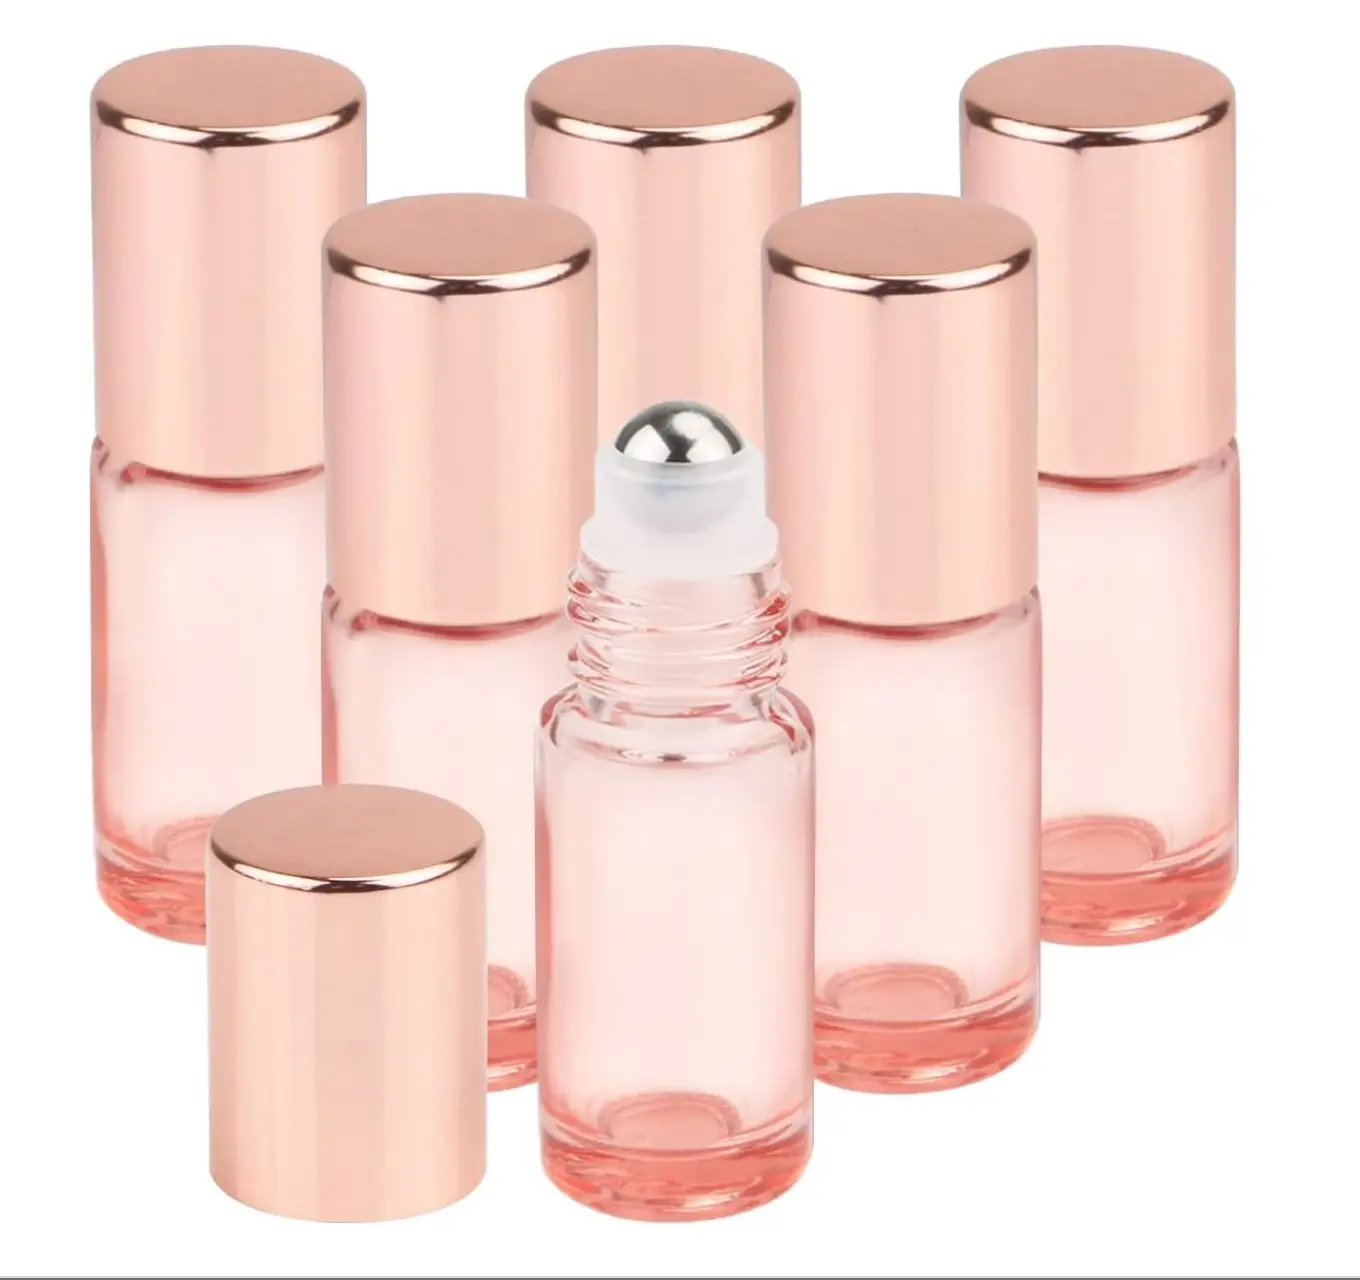 Botol Roll On 5ml dengan tutup mawar emas botol Roller bola untuk minyak esensial parfum kosmetik cair